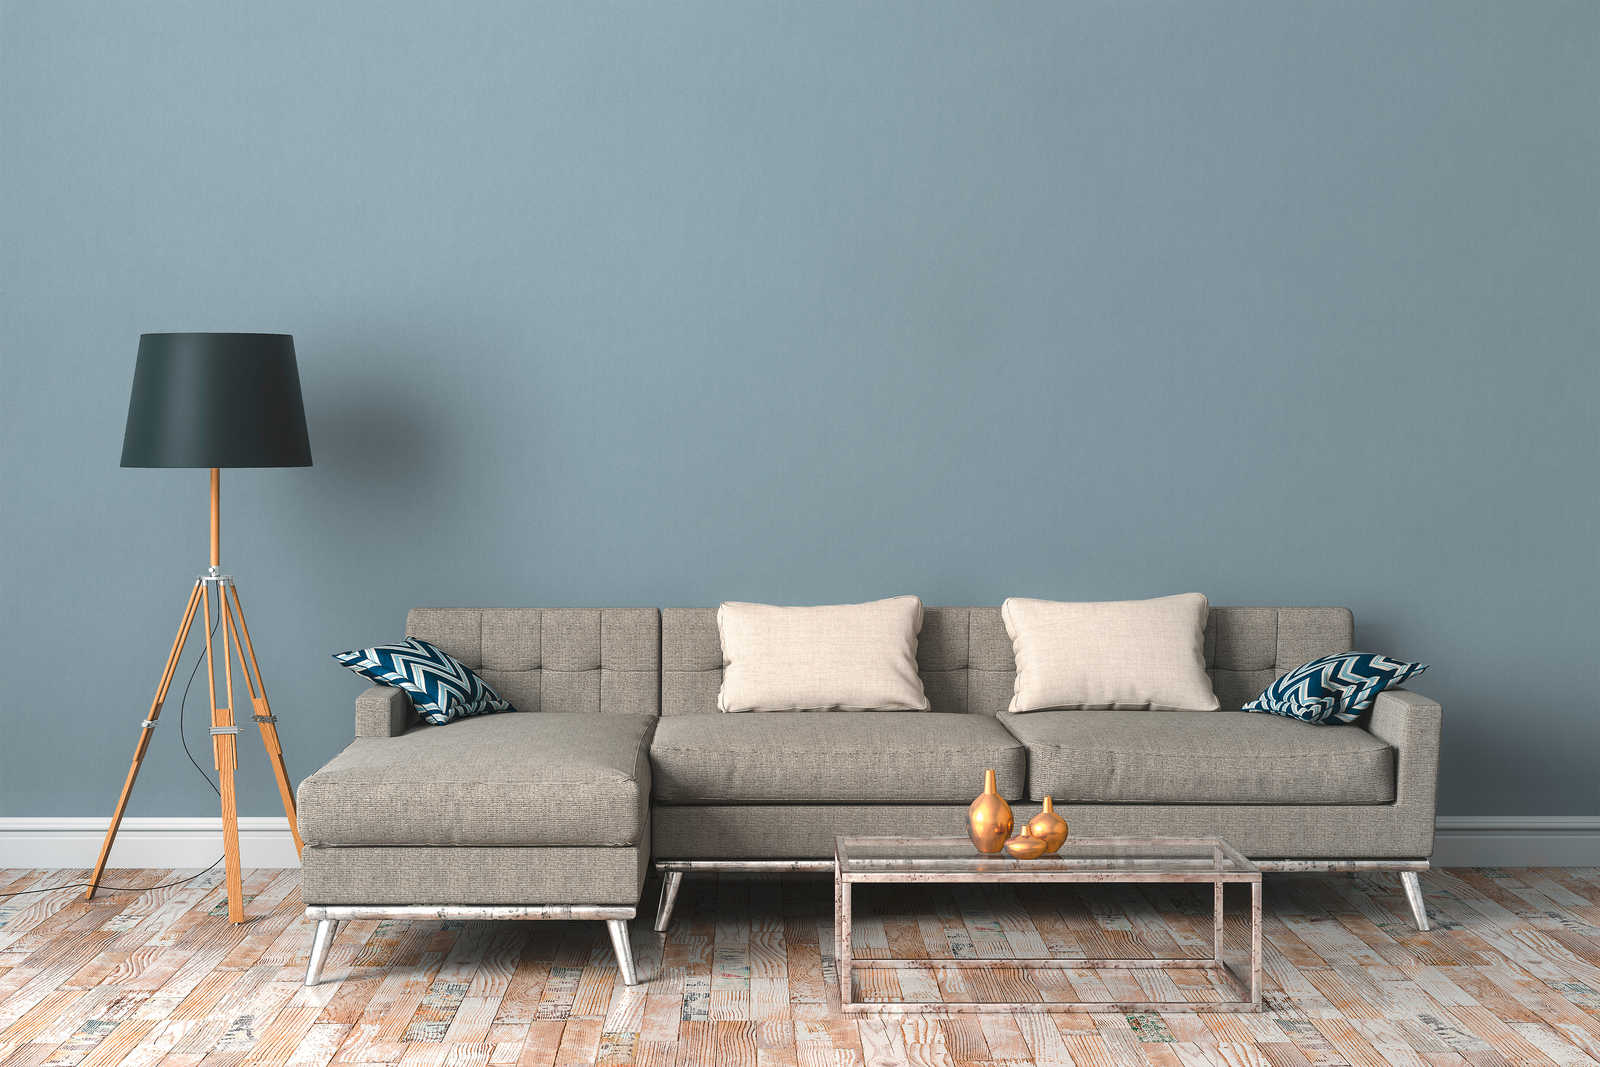             behang blauw-grijs met stofstructuur & matte kleur - blauw
        